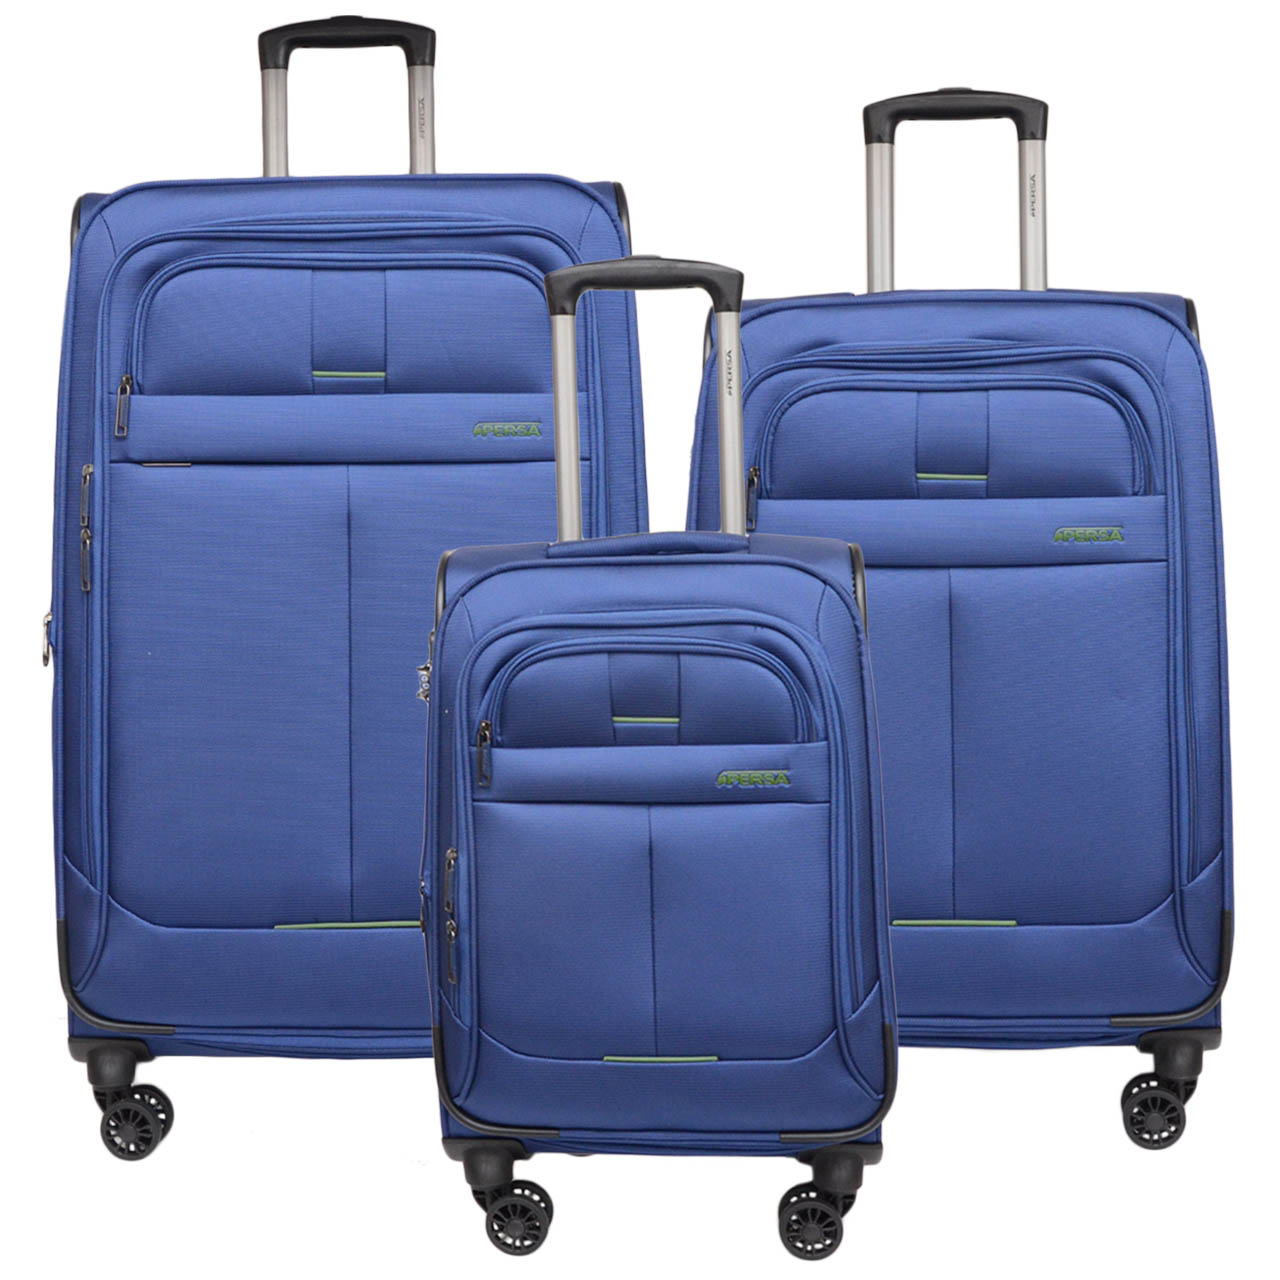 مجموعه سه عددی چمدان پرسا مدل P 301115